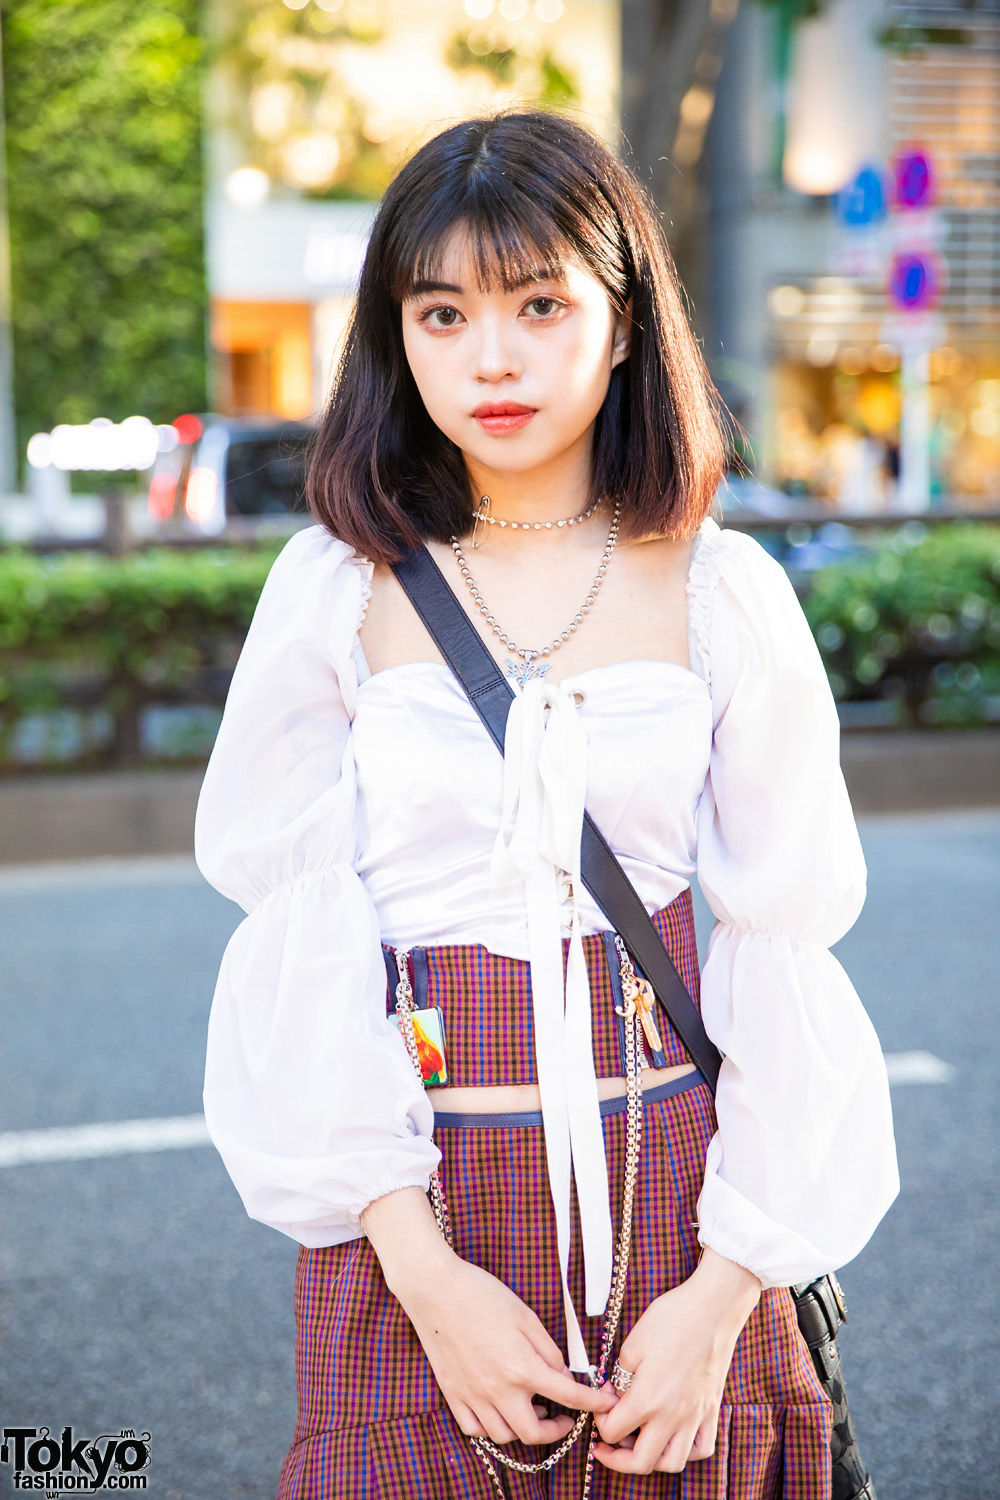 Tokyo Girl Plaid Fashion w/ Ruffled Long Sleeves, Nodress Plaid Skirt